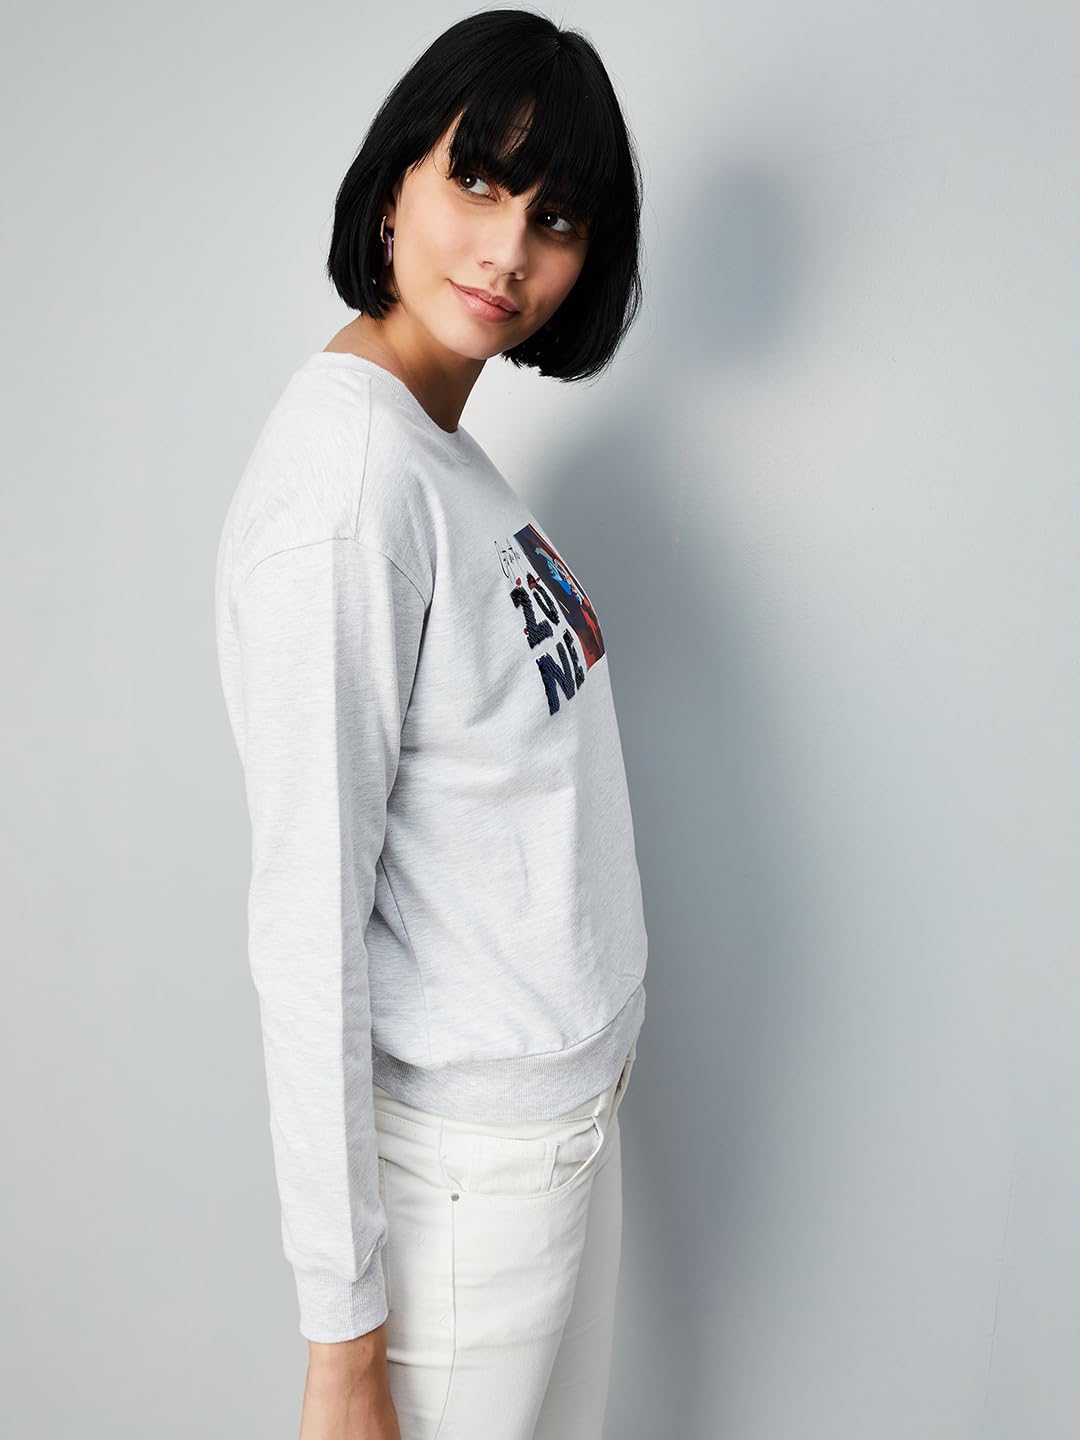 Max Women Sequined Sweatshirt,Light Grey,XS